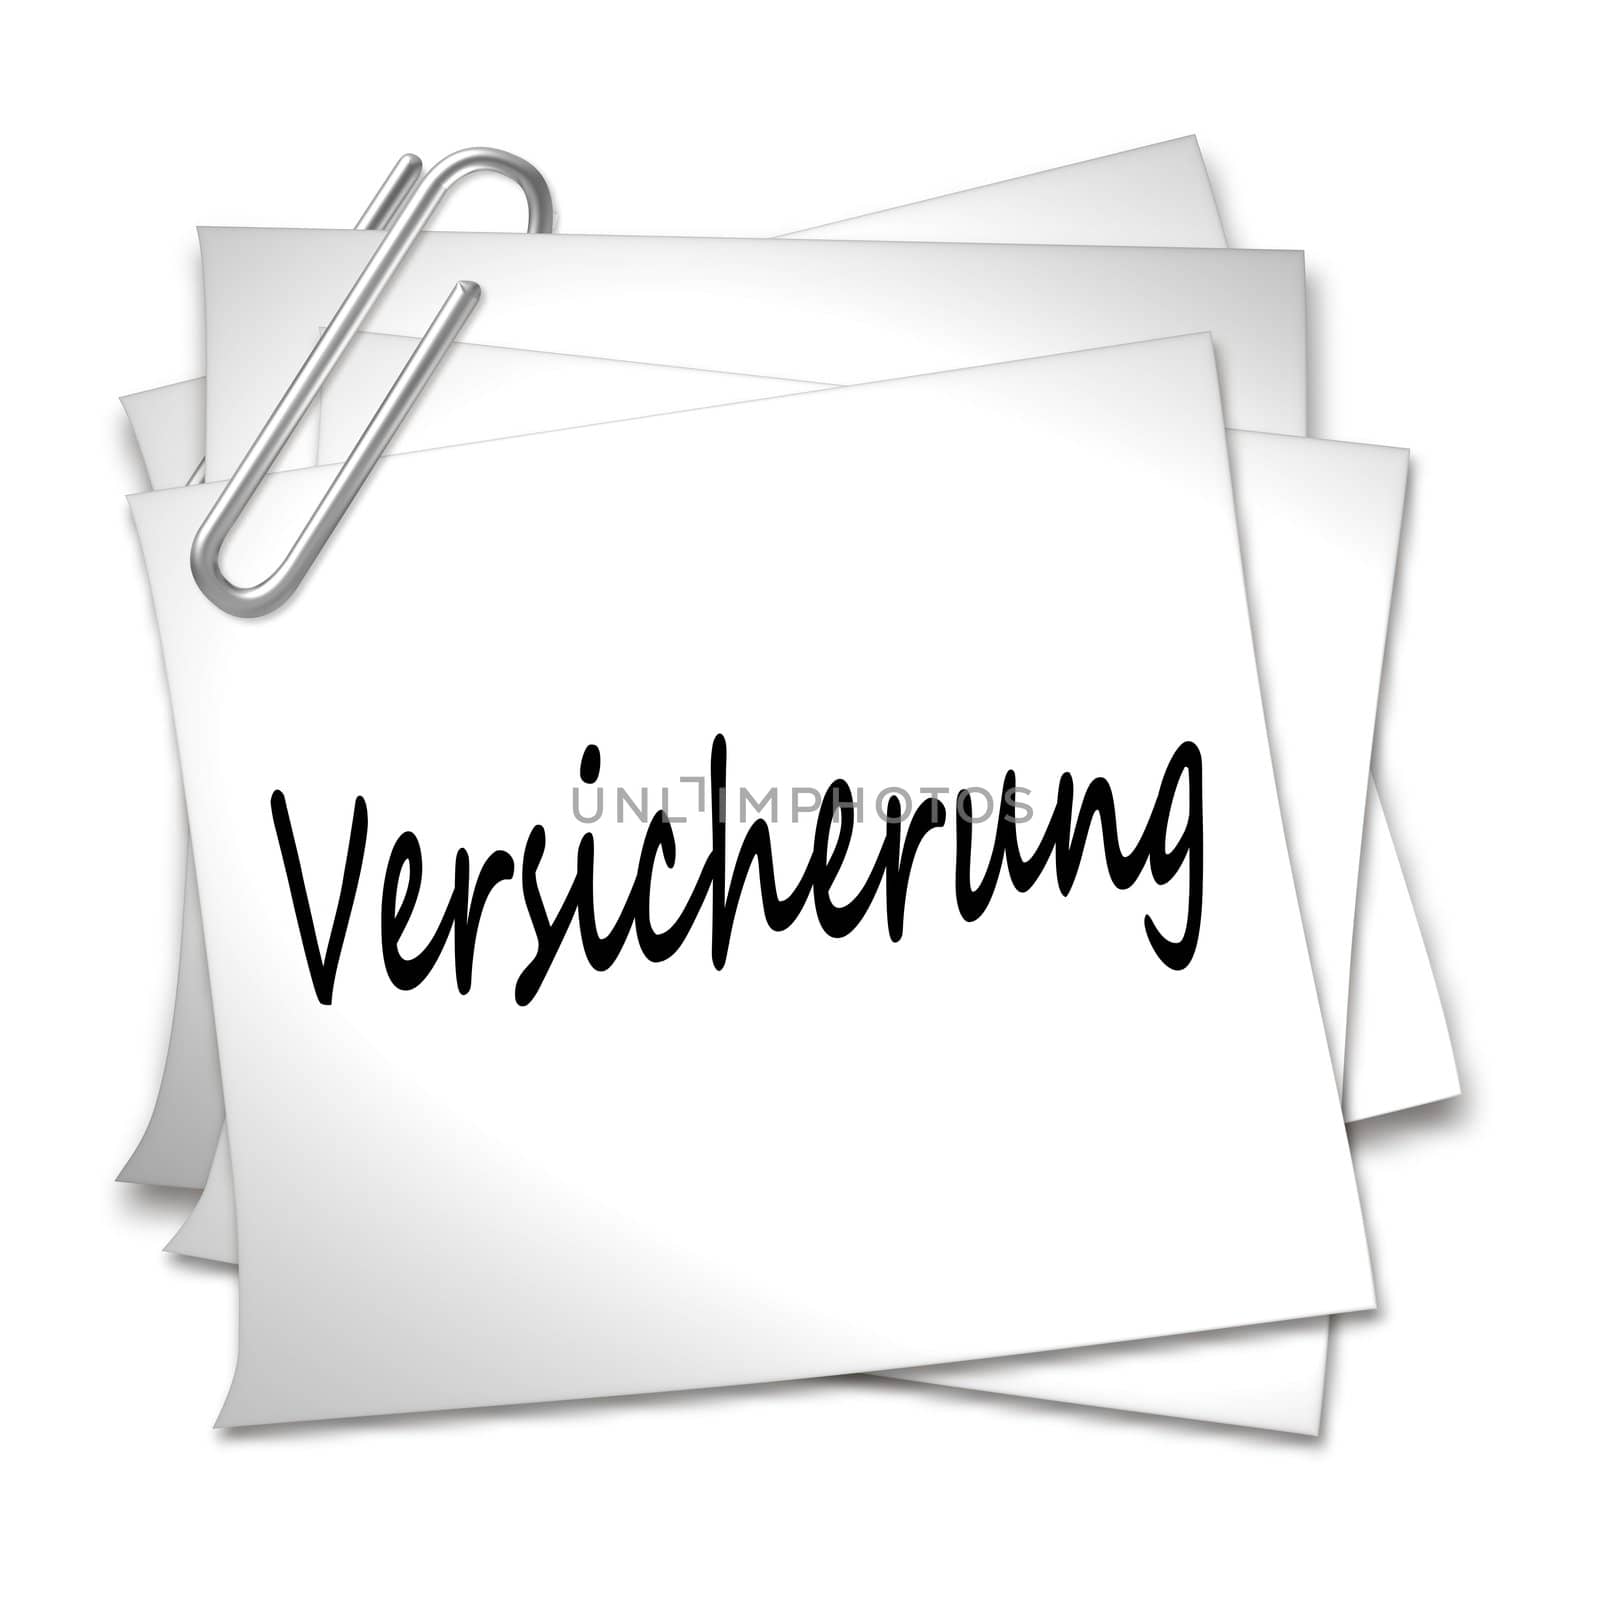 German Memo with Paper Clip - Versicherung